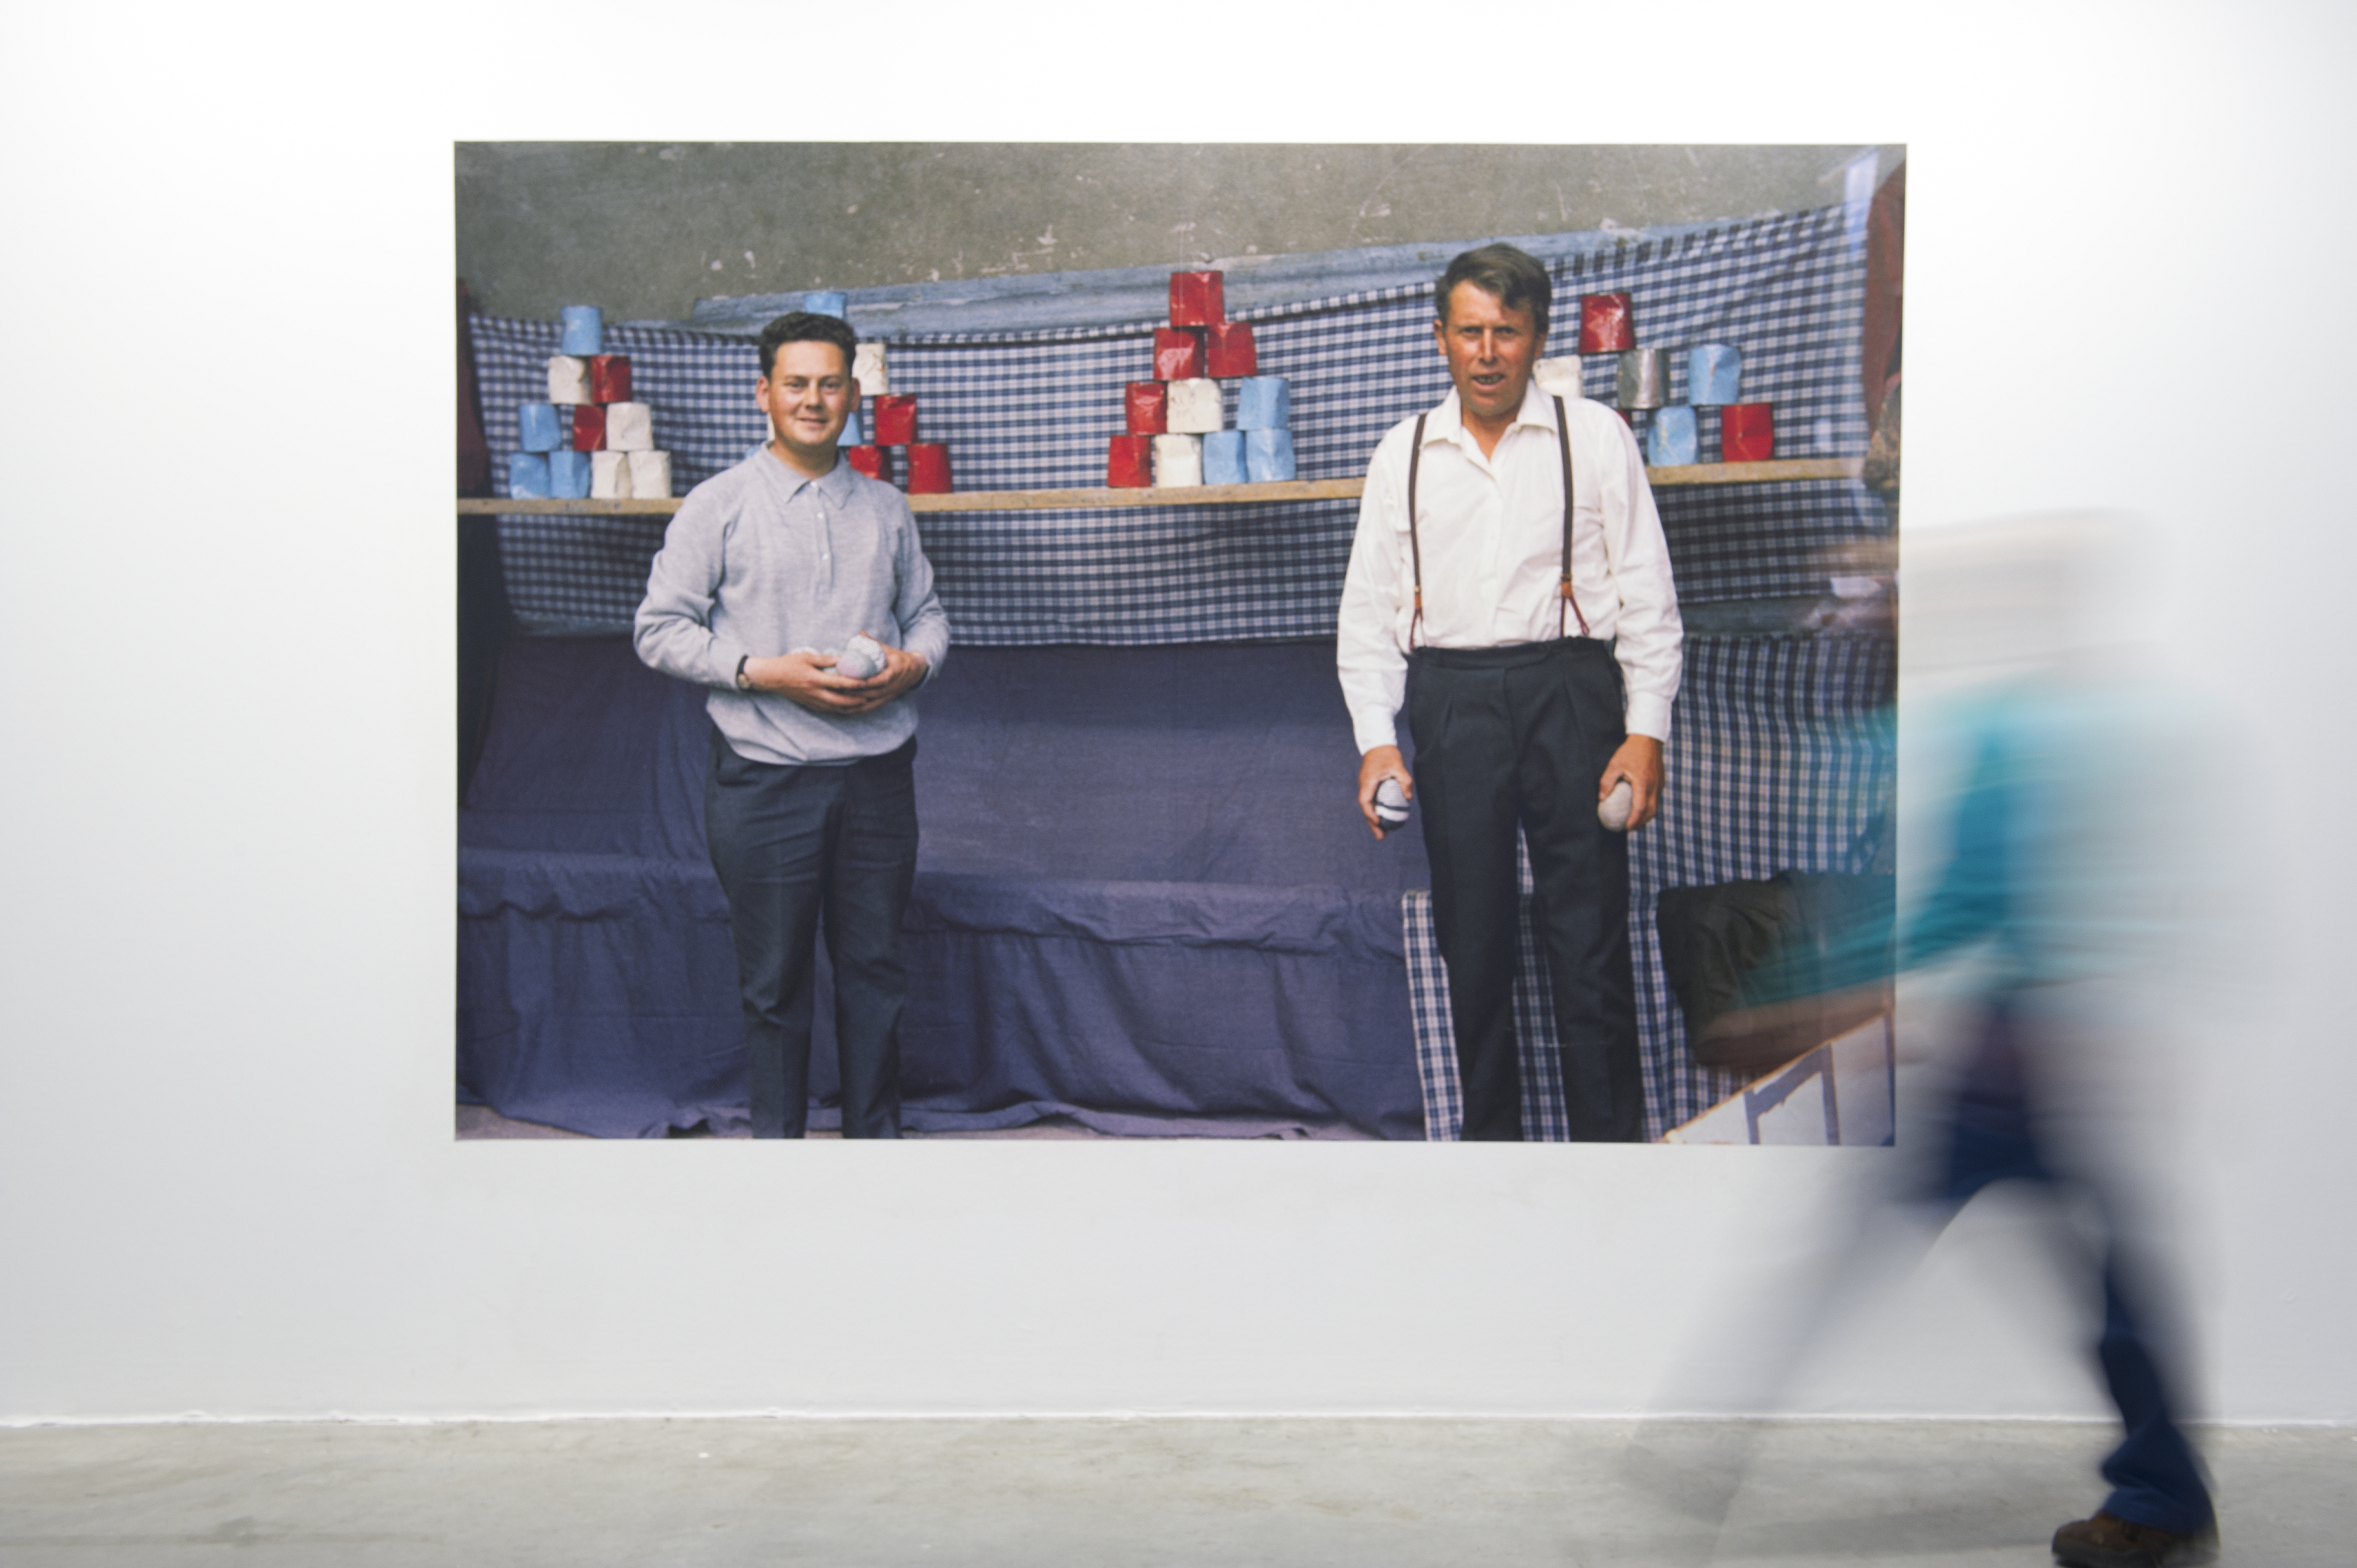 Vue de l'exposition L'asile des photographies, de Mathieu Pernot et Philippe Artières © Marc Domage / la maison rouge 2014